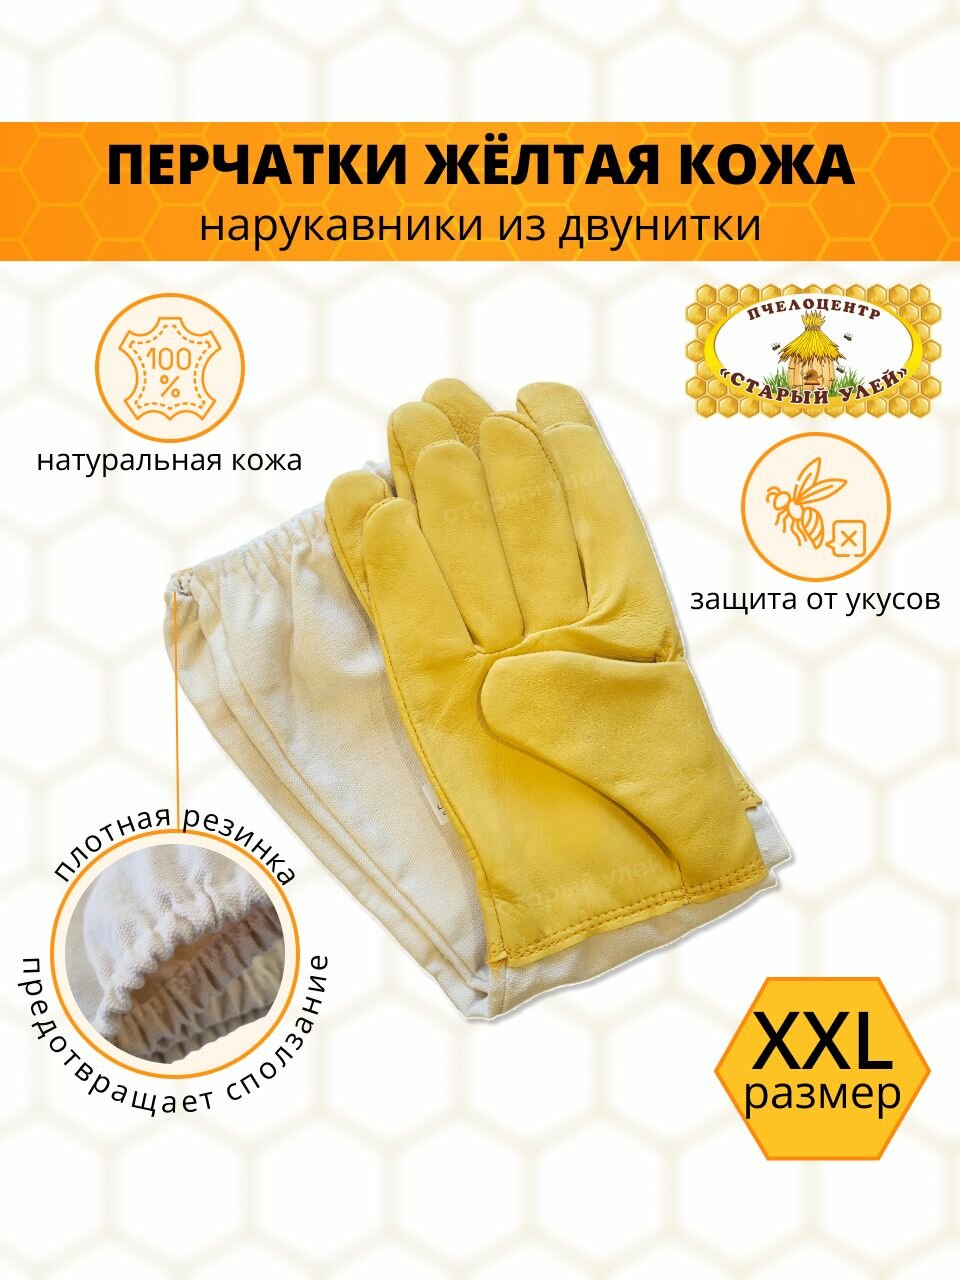 Перчатки пчеловода желтые / кожа с защитными нарукавниками/ размер XXL